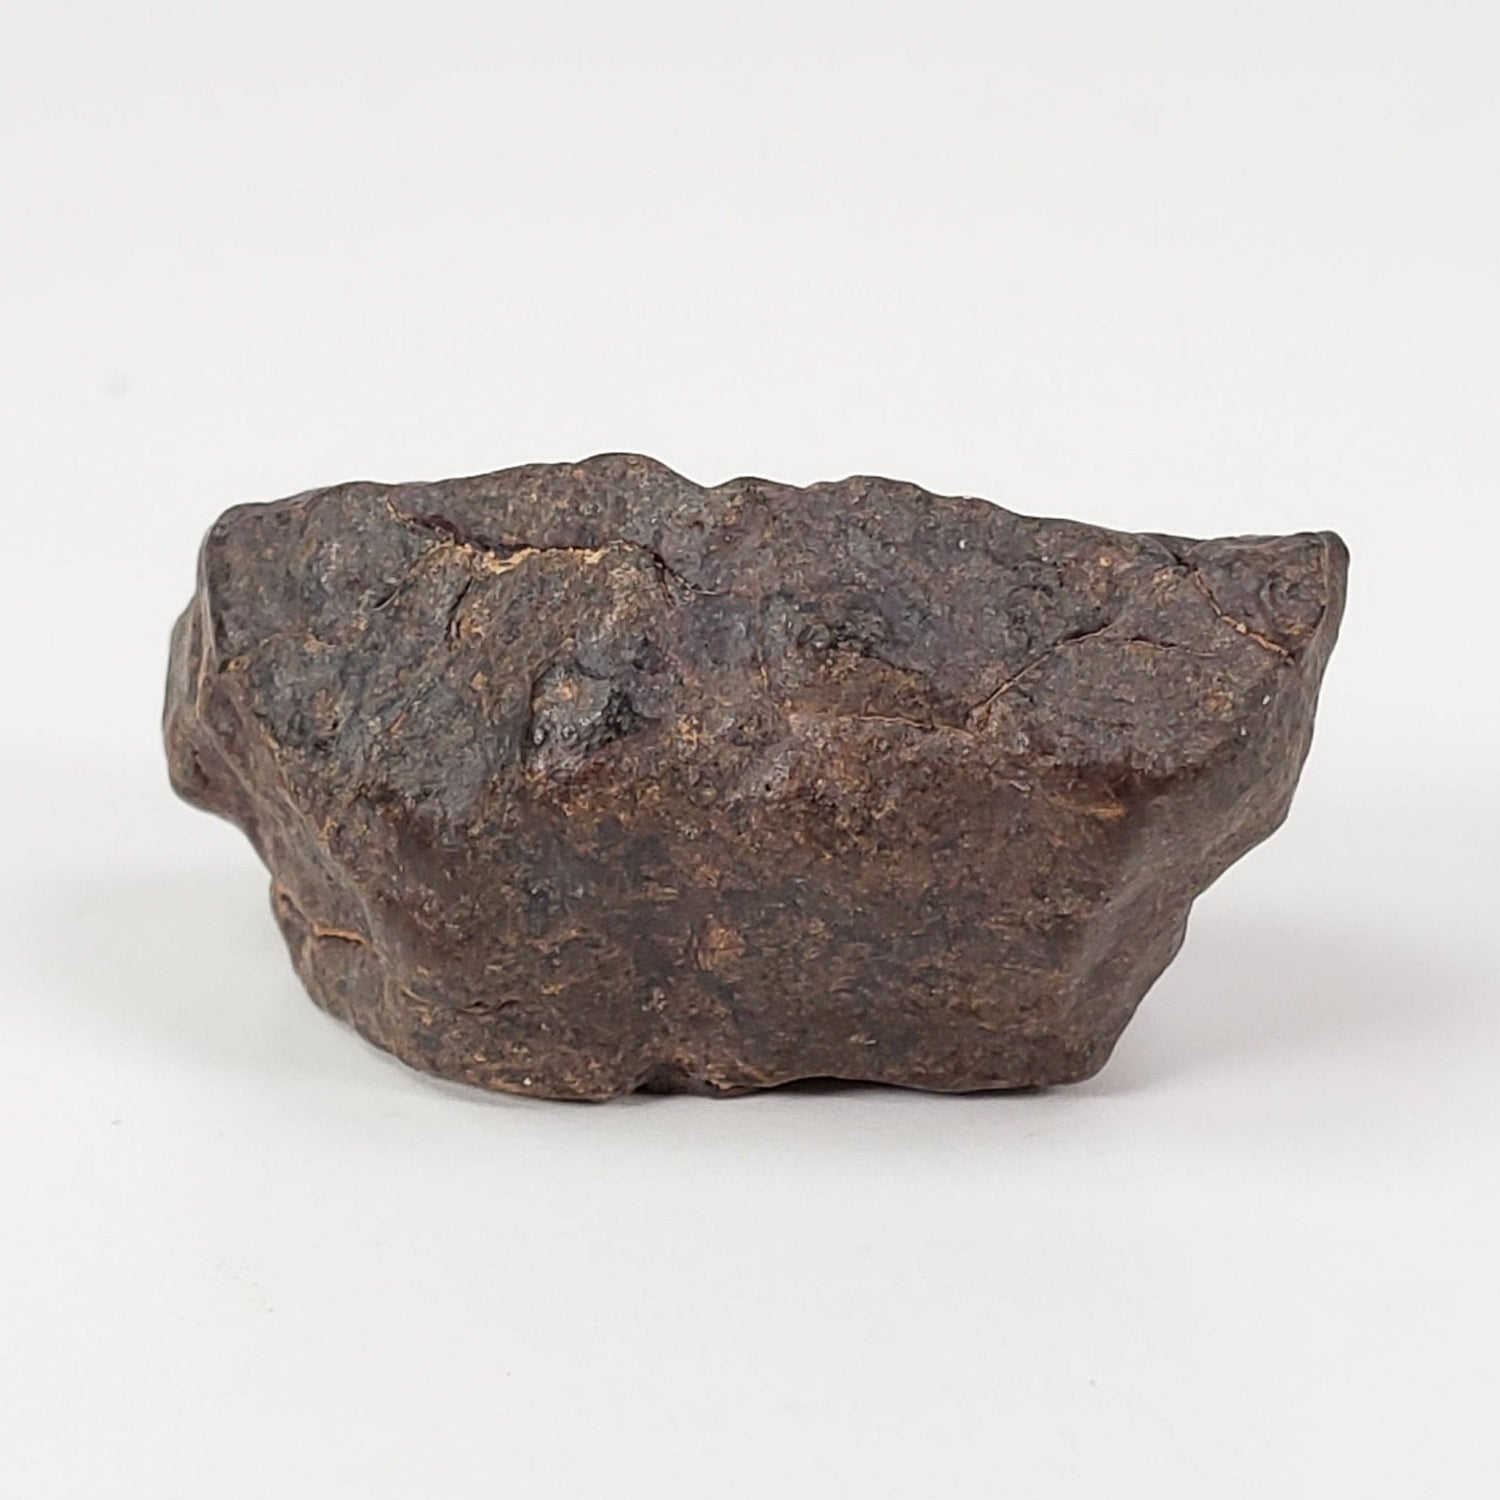 NWA 4293 Meteorite | 9.5 Grams | Individual | H6 Chondrite